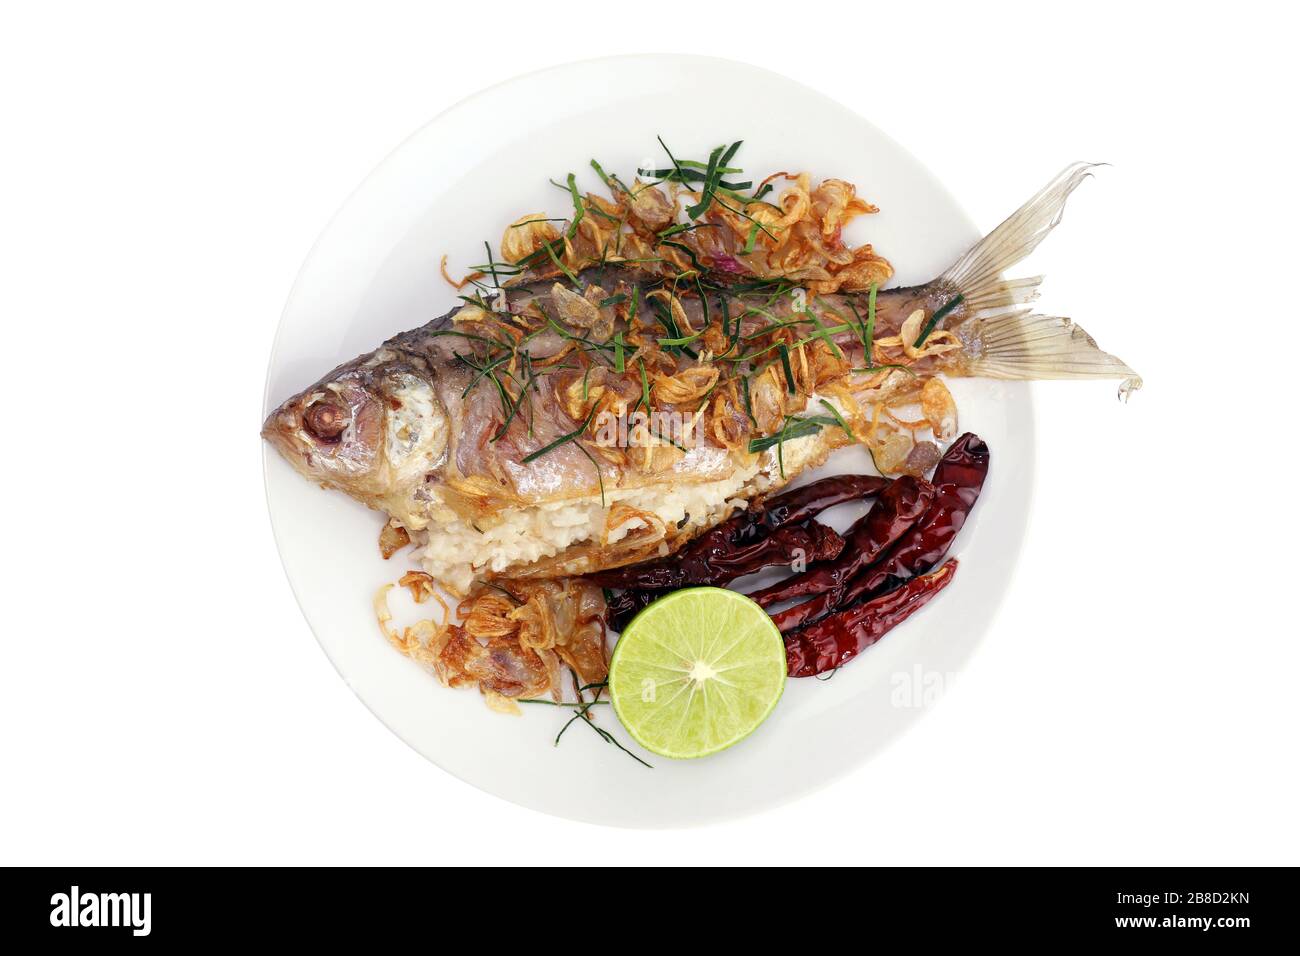 Gebackene Fische schmackhaft gebraten (Pla som tod: thailändisches Wort), gebackene Fischbraten und gebratene Zwiebeln, Limettenscheibe und gebratene Chili mit frischem Gemüse auf Weiß serviert Stockfoto